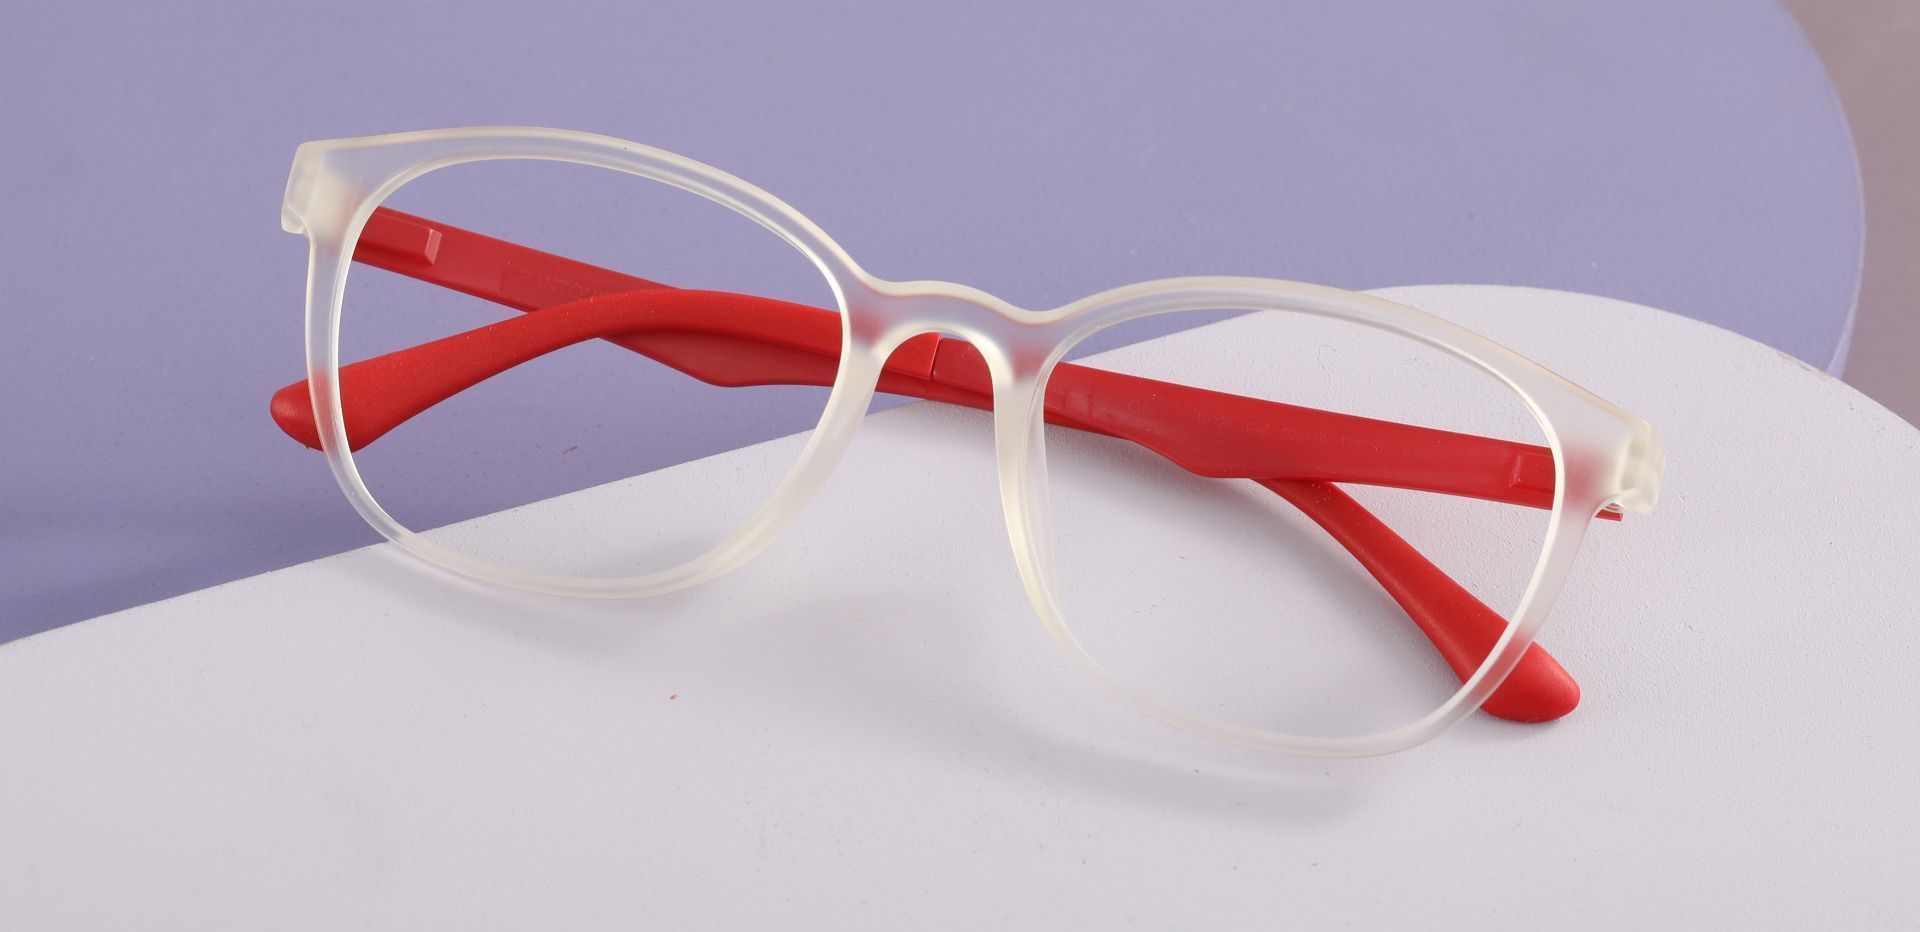 Ursula Oval Prescription Glasses - Matte Clear